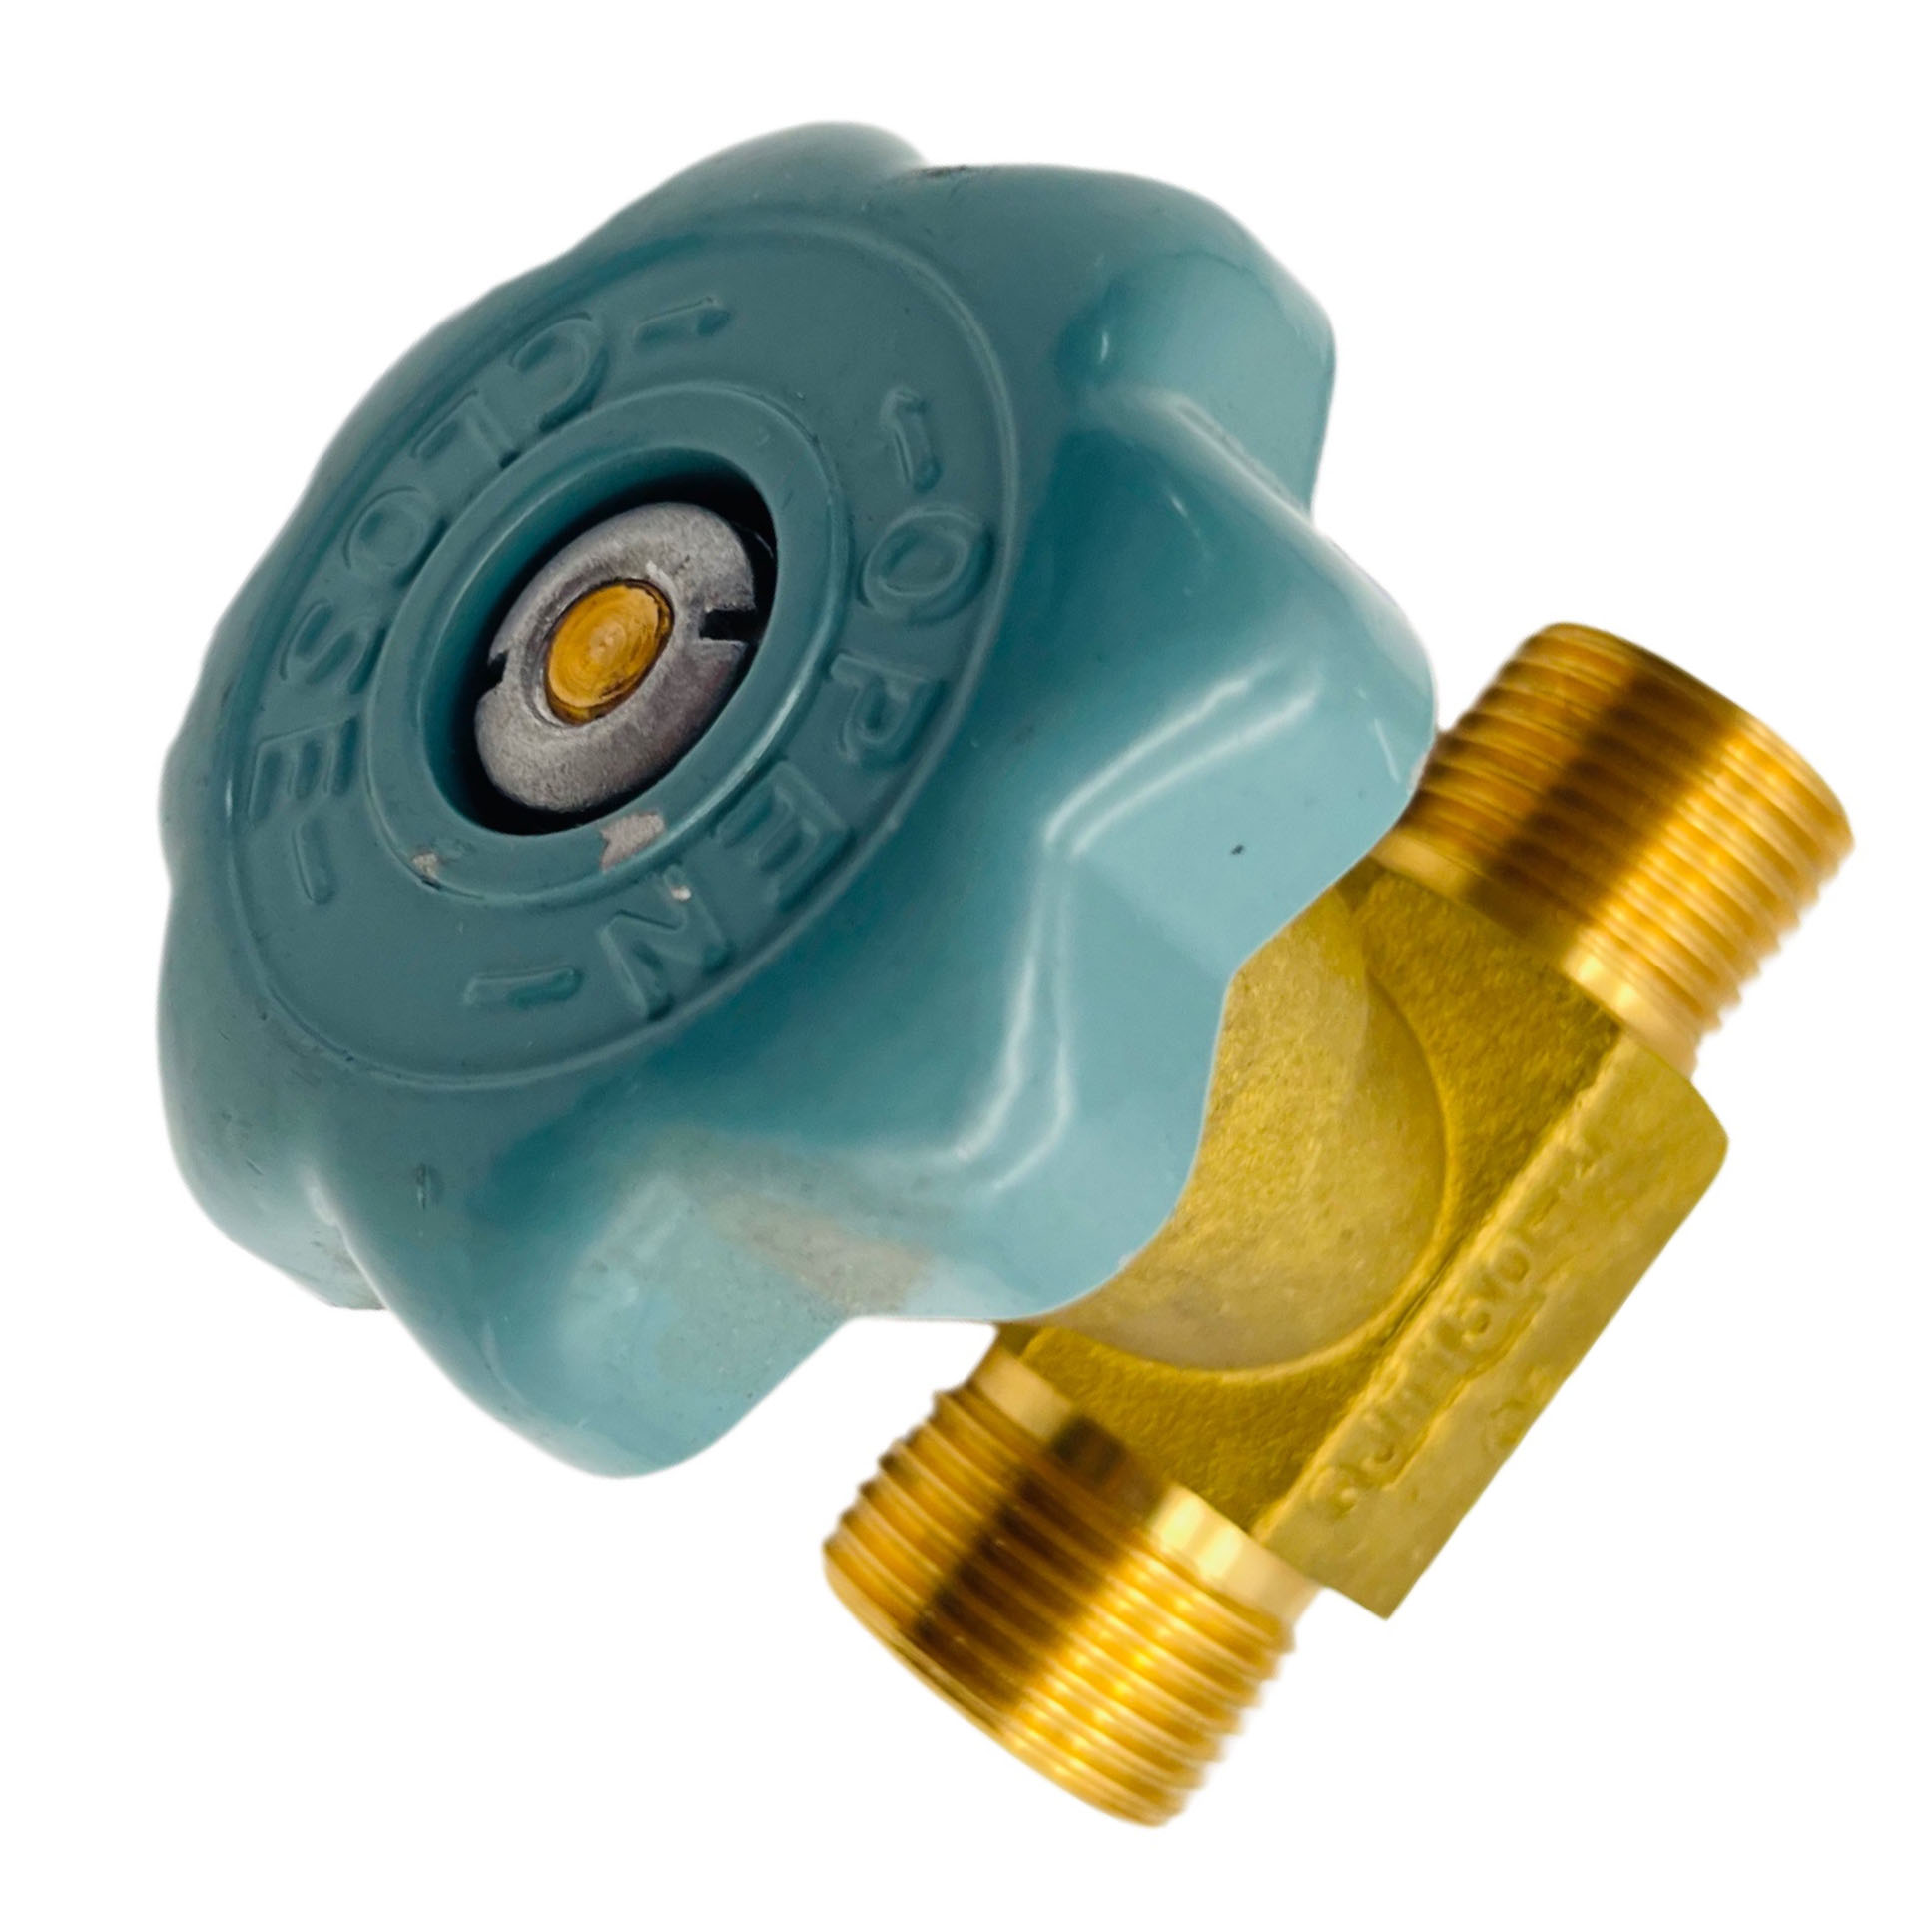 Válvula globo de bronze de ângulo reto com encaixe de tubo de gás QJT150-4